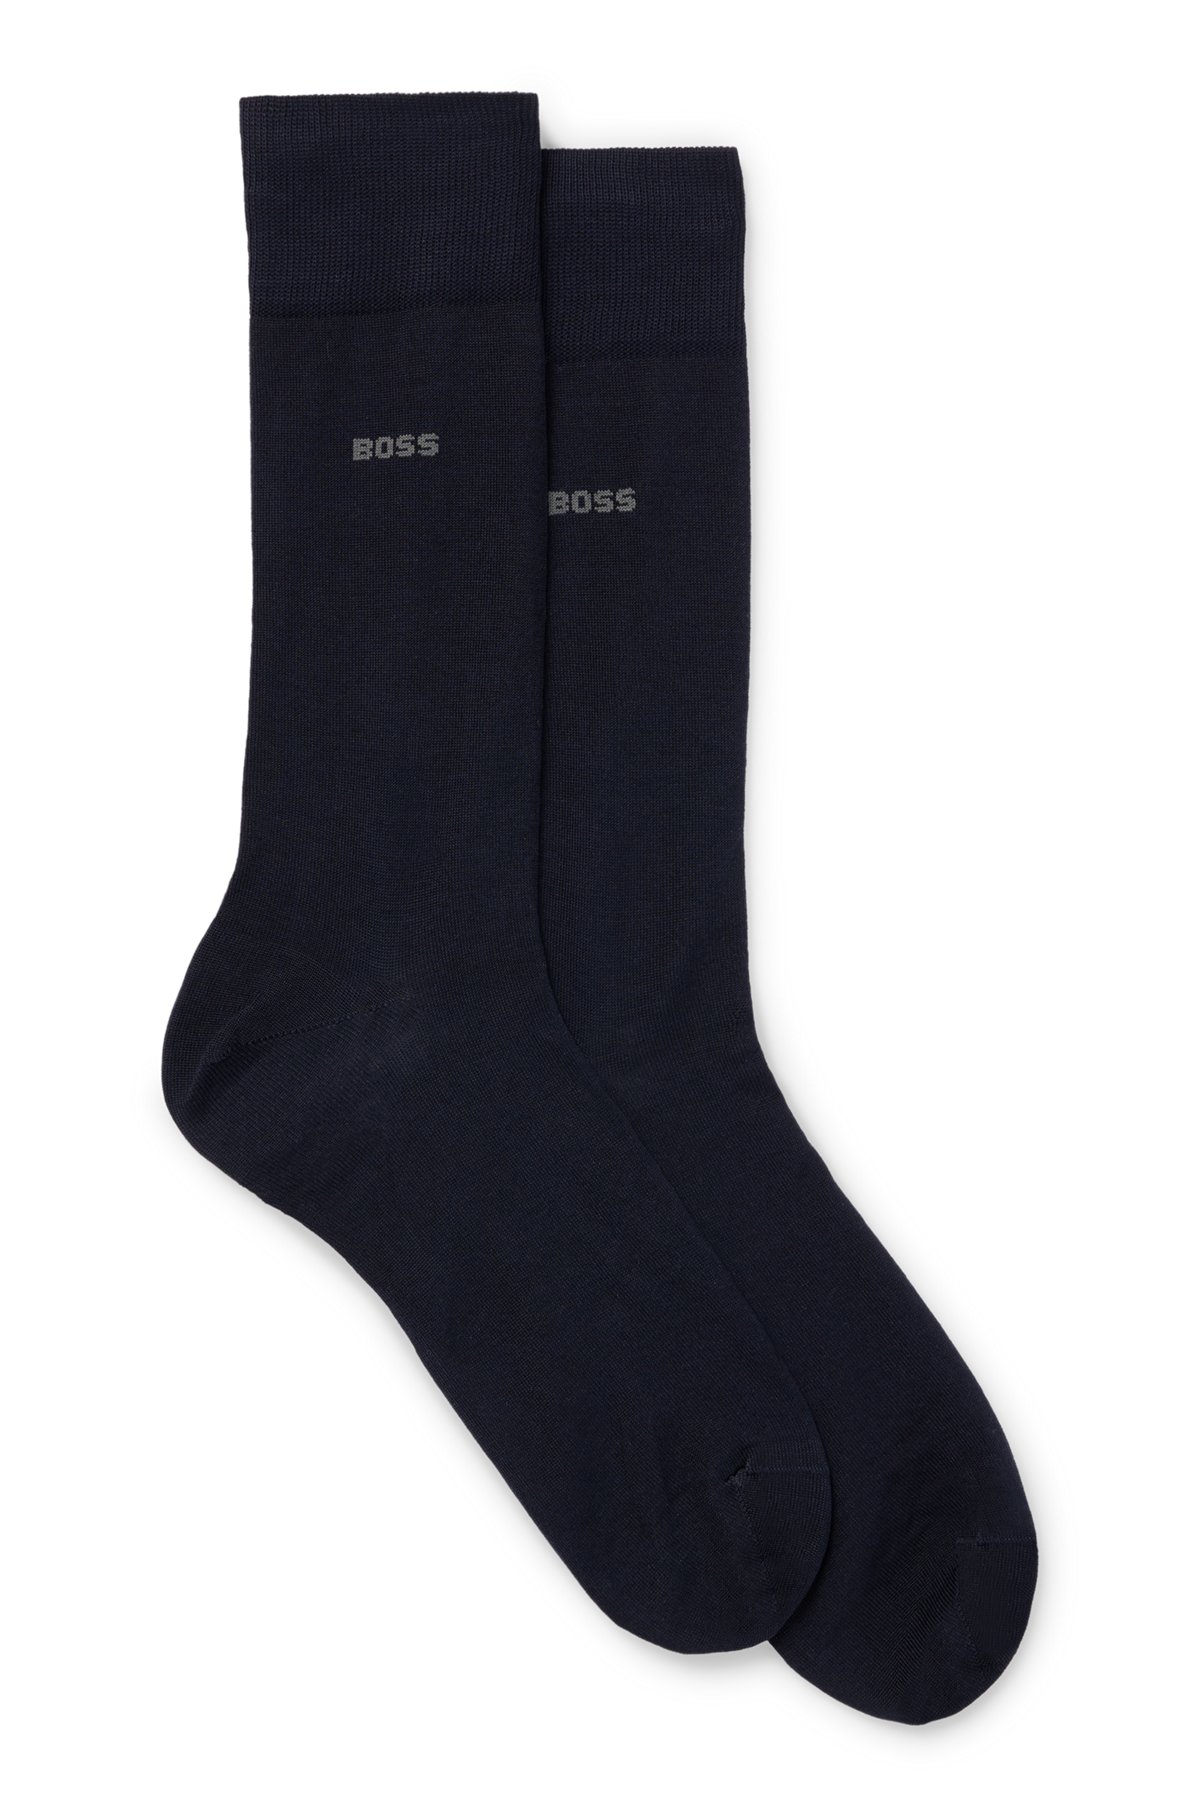 Zweier-Pack mittelhohe Socken aus Stretch-Baumwolle, Dunkelblau